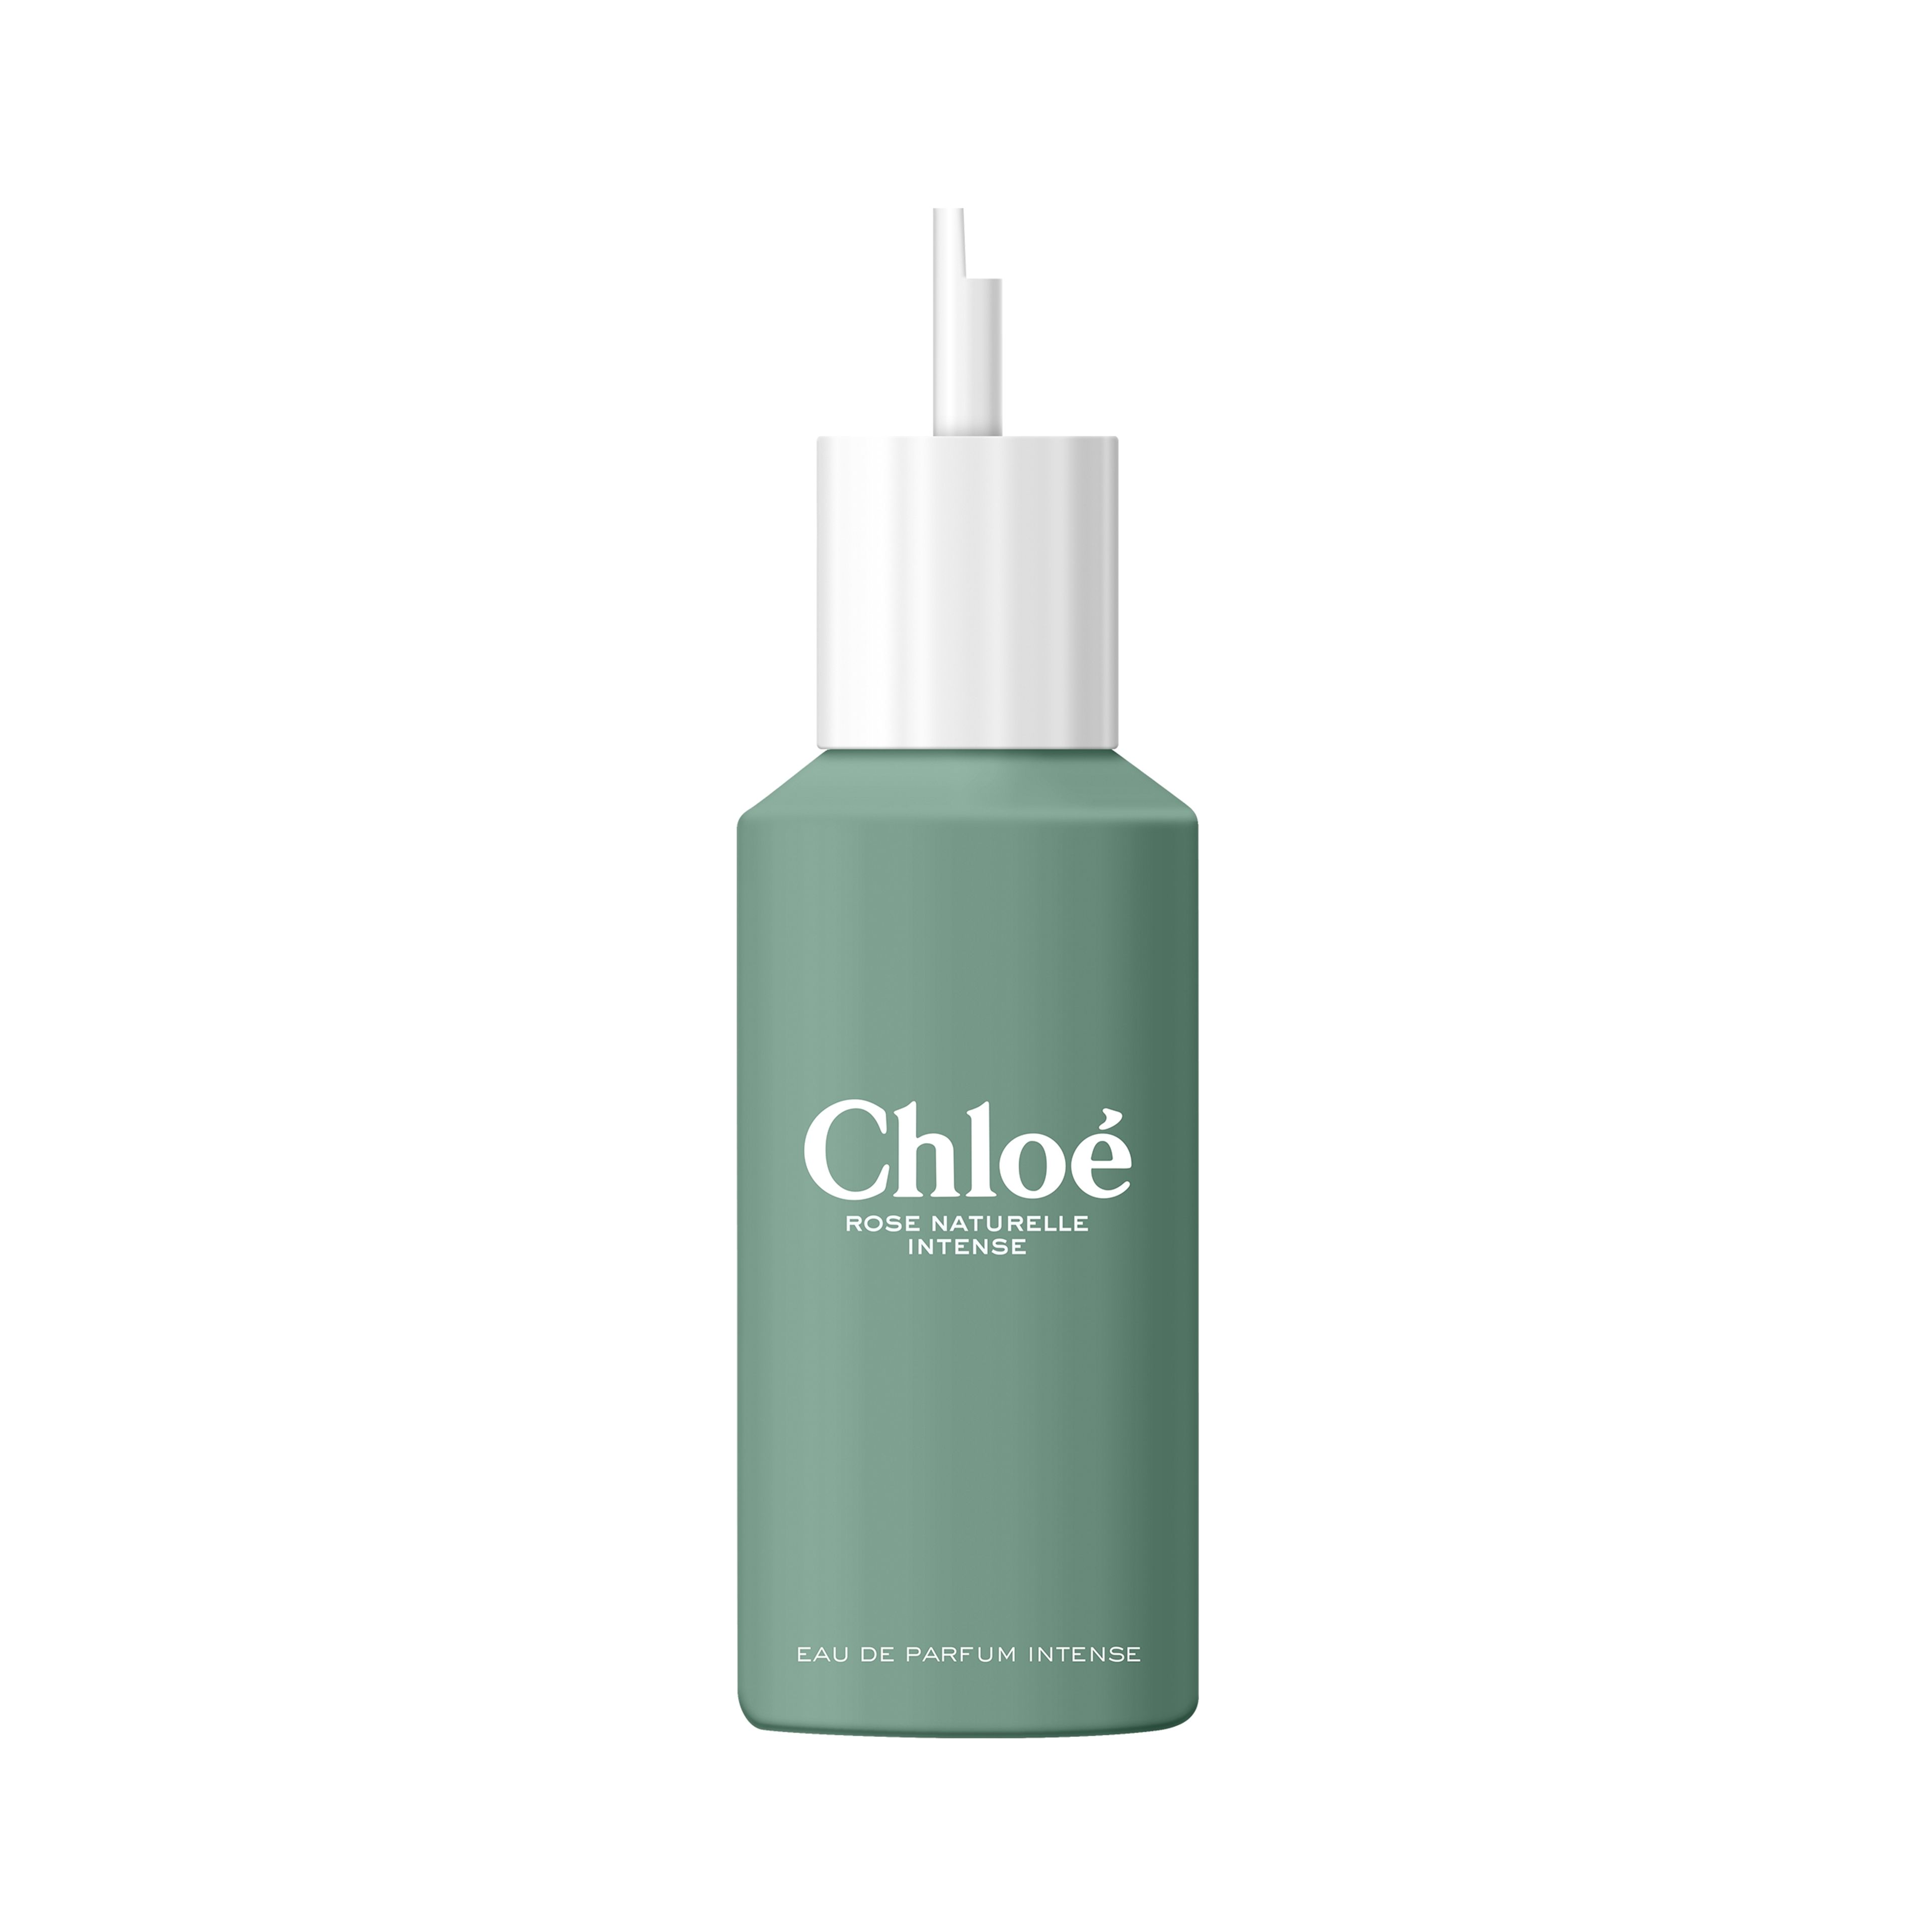 Chloé Chloé Eau De Parfum Intense Rose Naturelle Intense - Ricarica 1